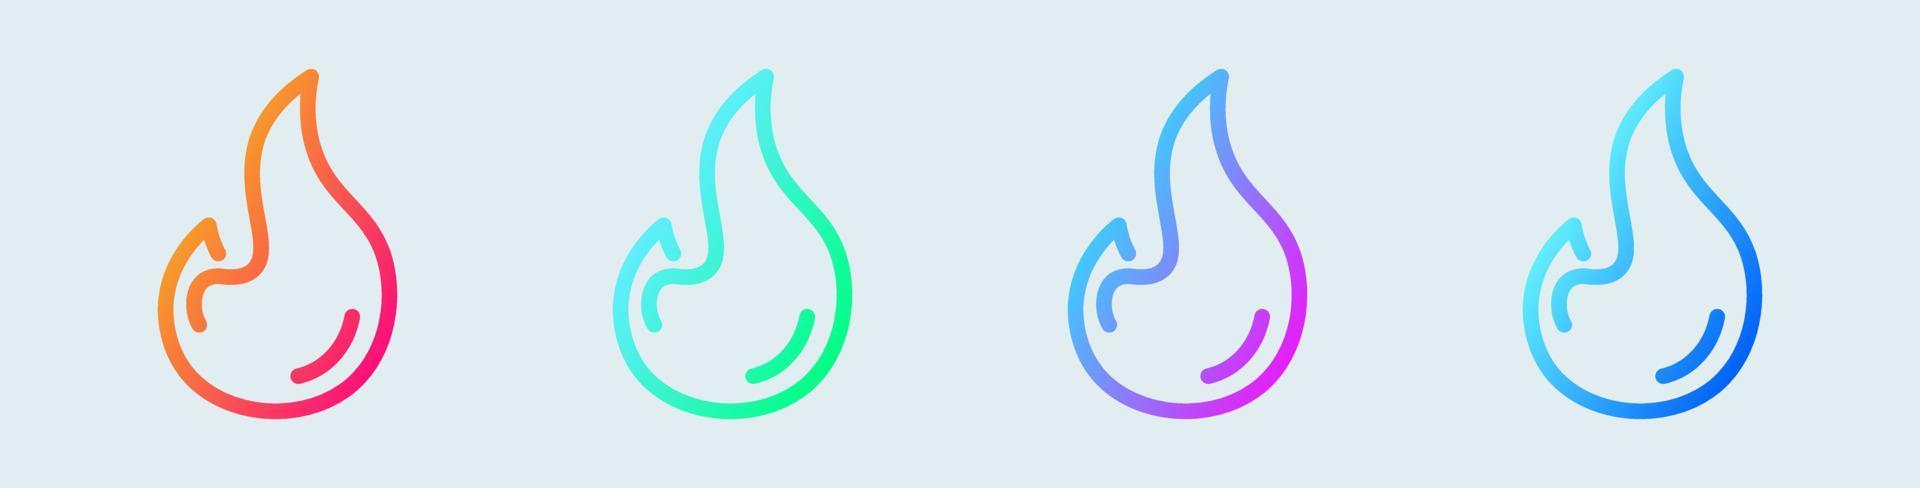 icône de ligne de feu en dégradé de couleurs. signes de flamme illustration vectorielle. vecteur